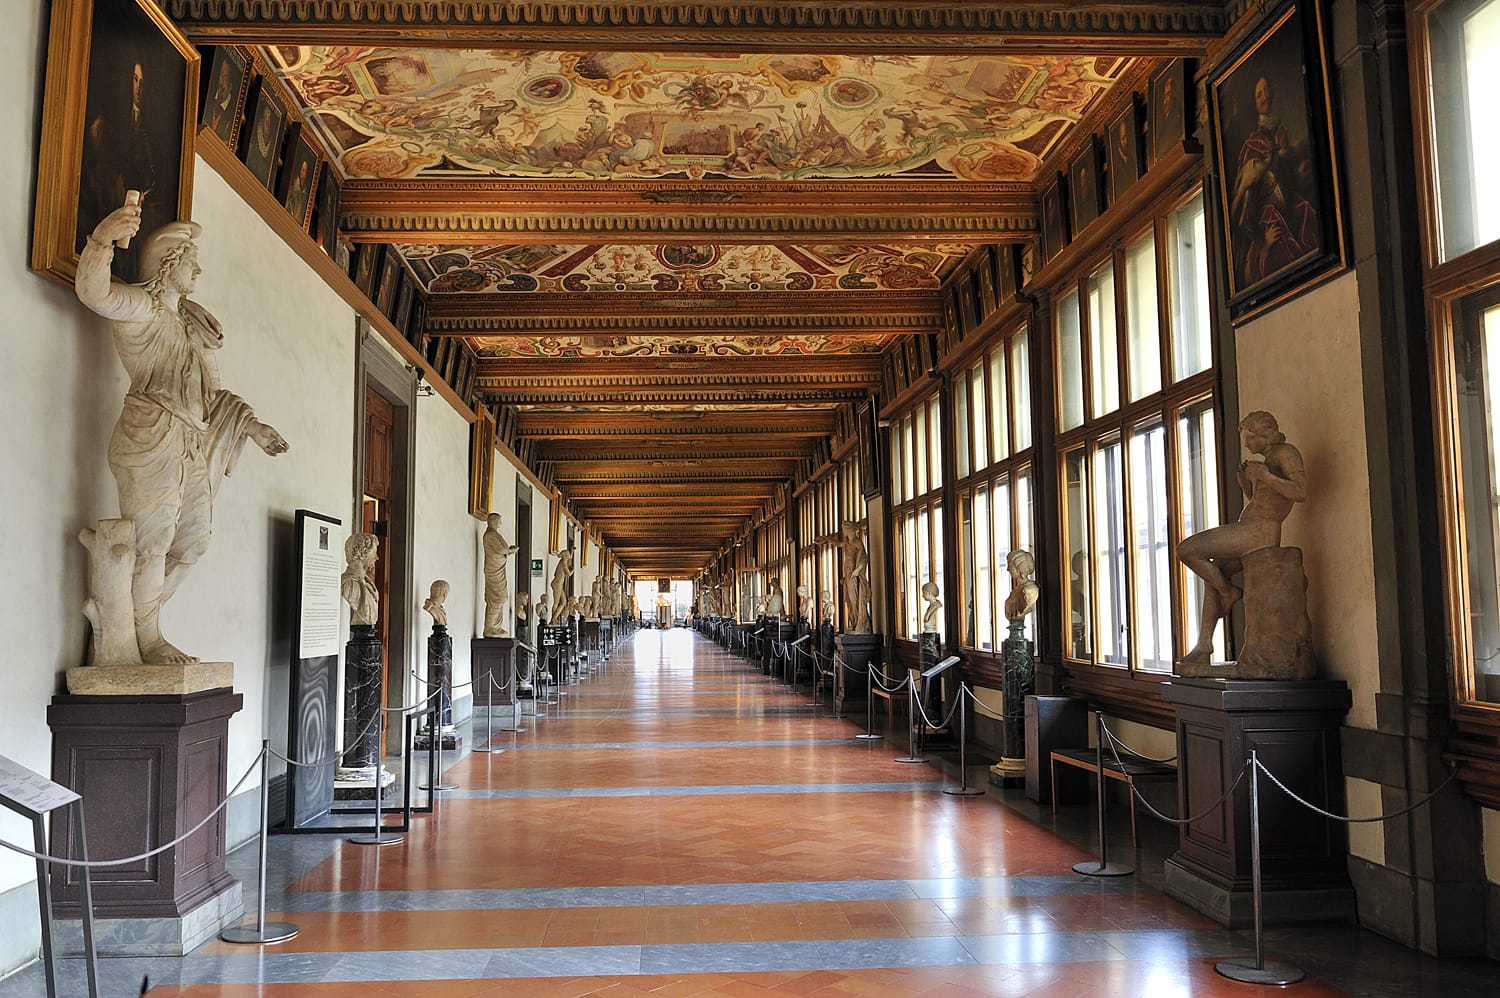 Γκαλερί Uffizi, East Corridor, ένα από τα κύρια μουσεία της Φλωρεντίας και από τα παλαιότερα και πιο διάσημα μουσεία τέχνης της Ευρώπης, Φλωρεντία, Ιταλία